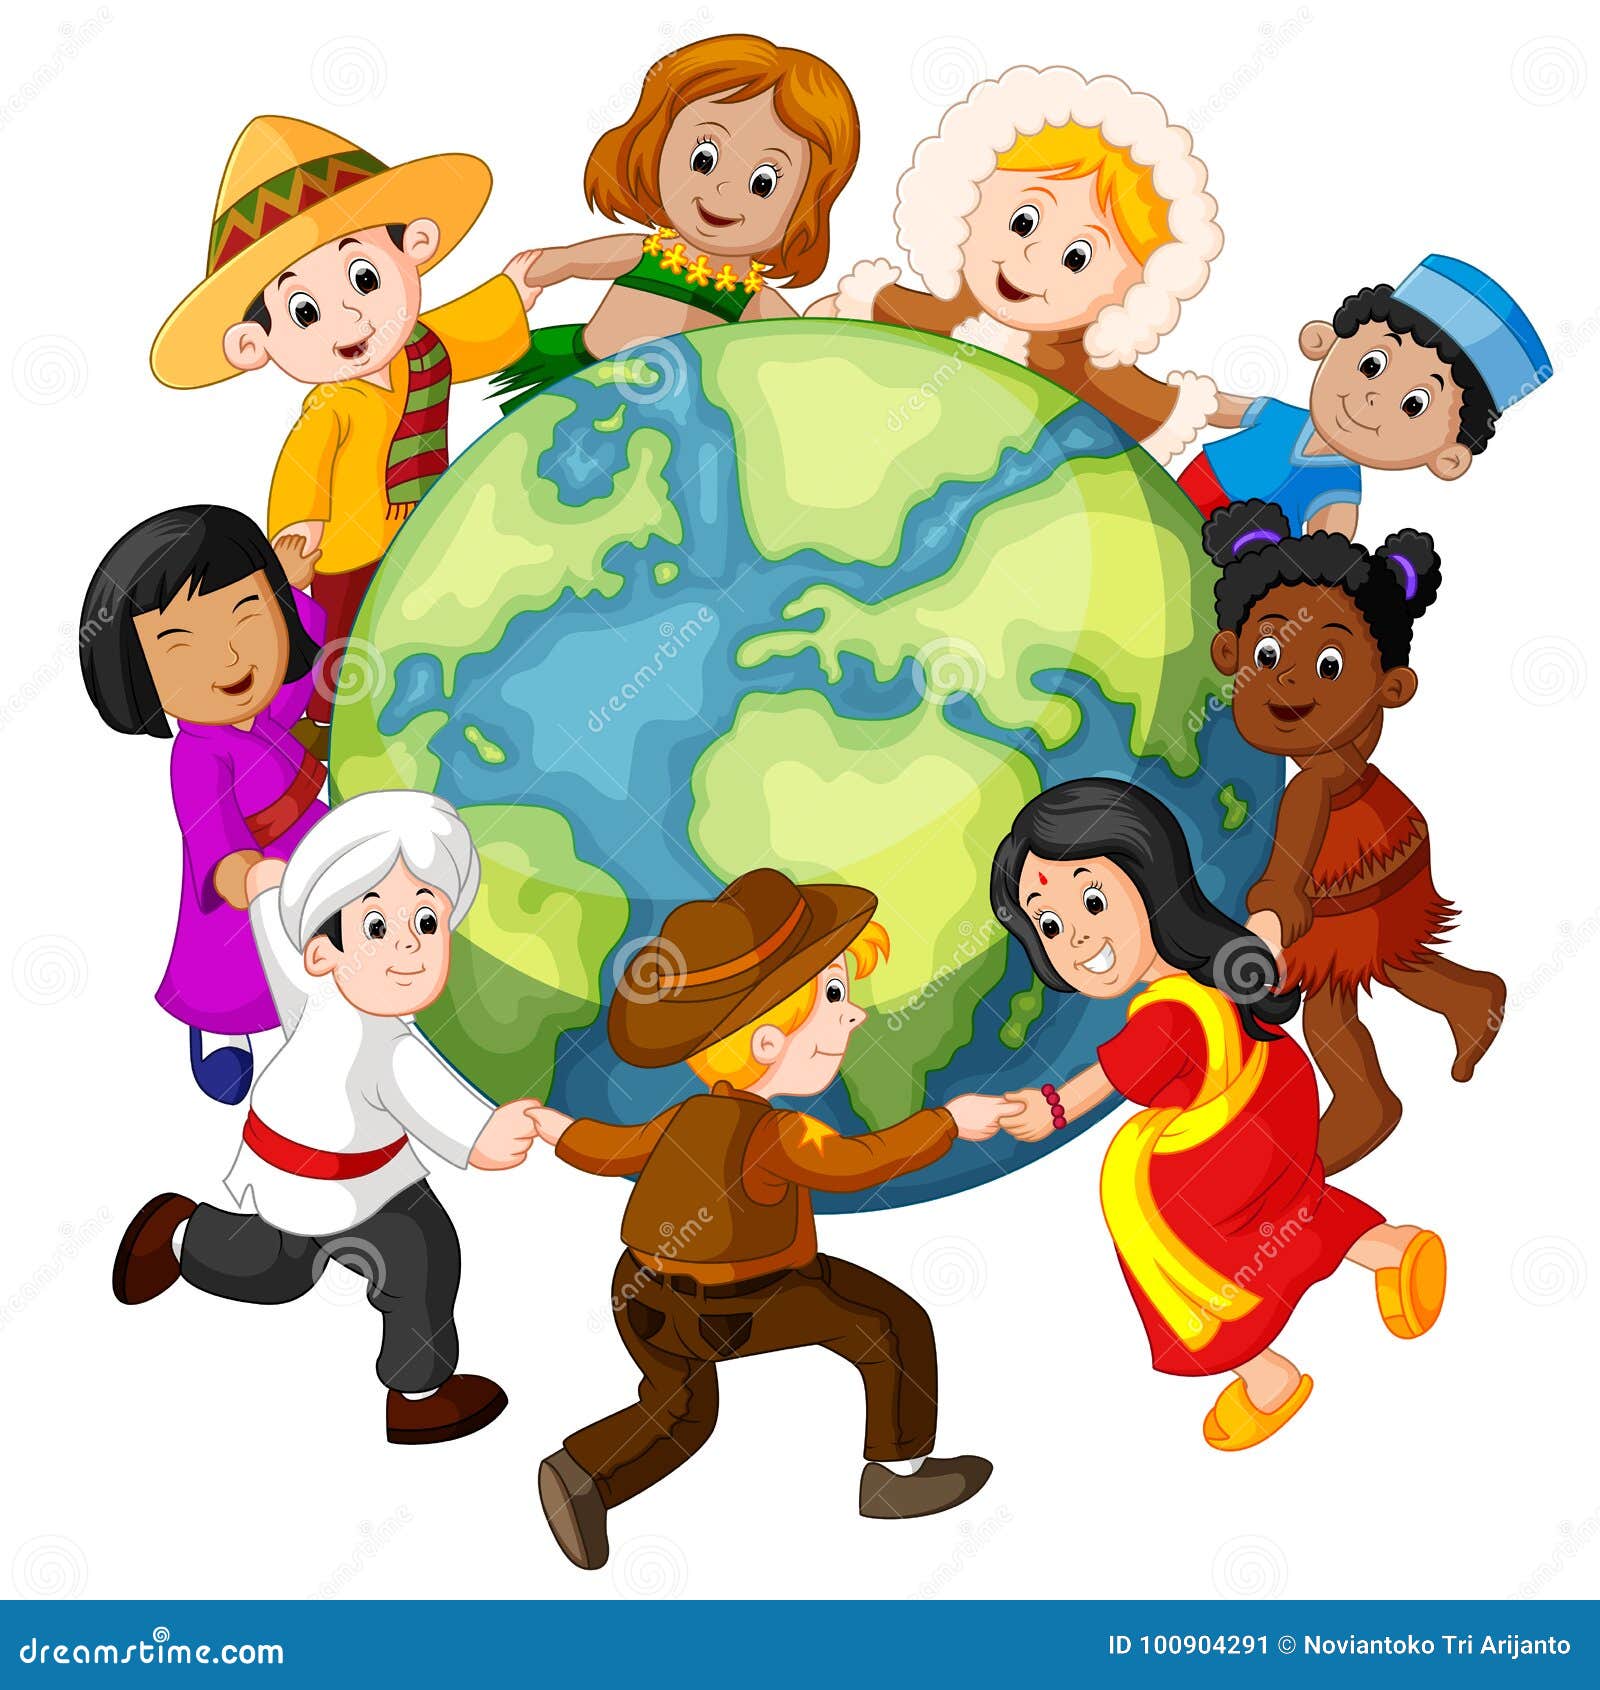 children holding hands around the world